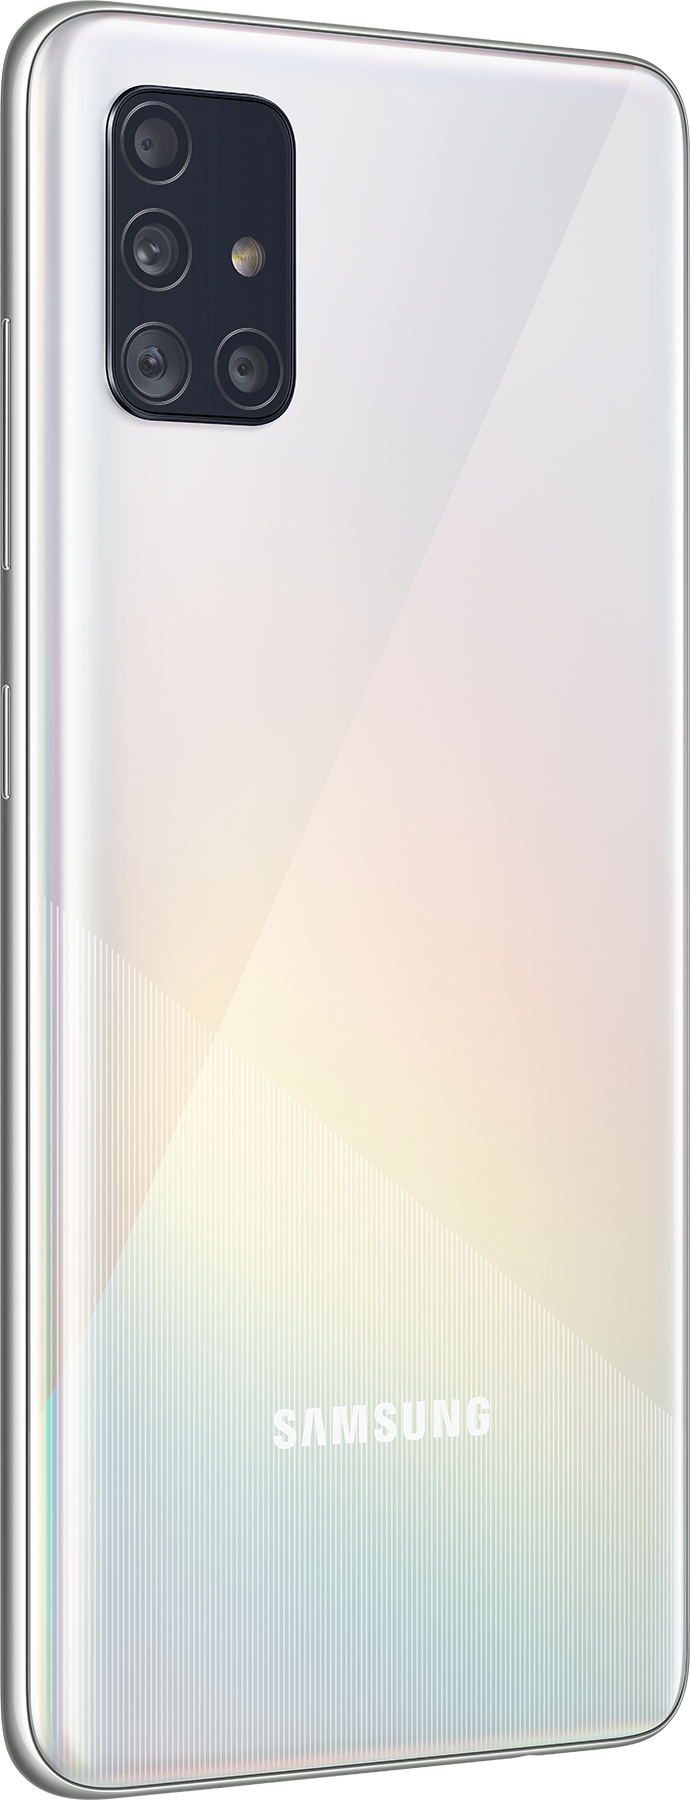 Samsung Galaxy A51 SM-A515F 128GB